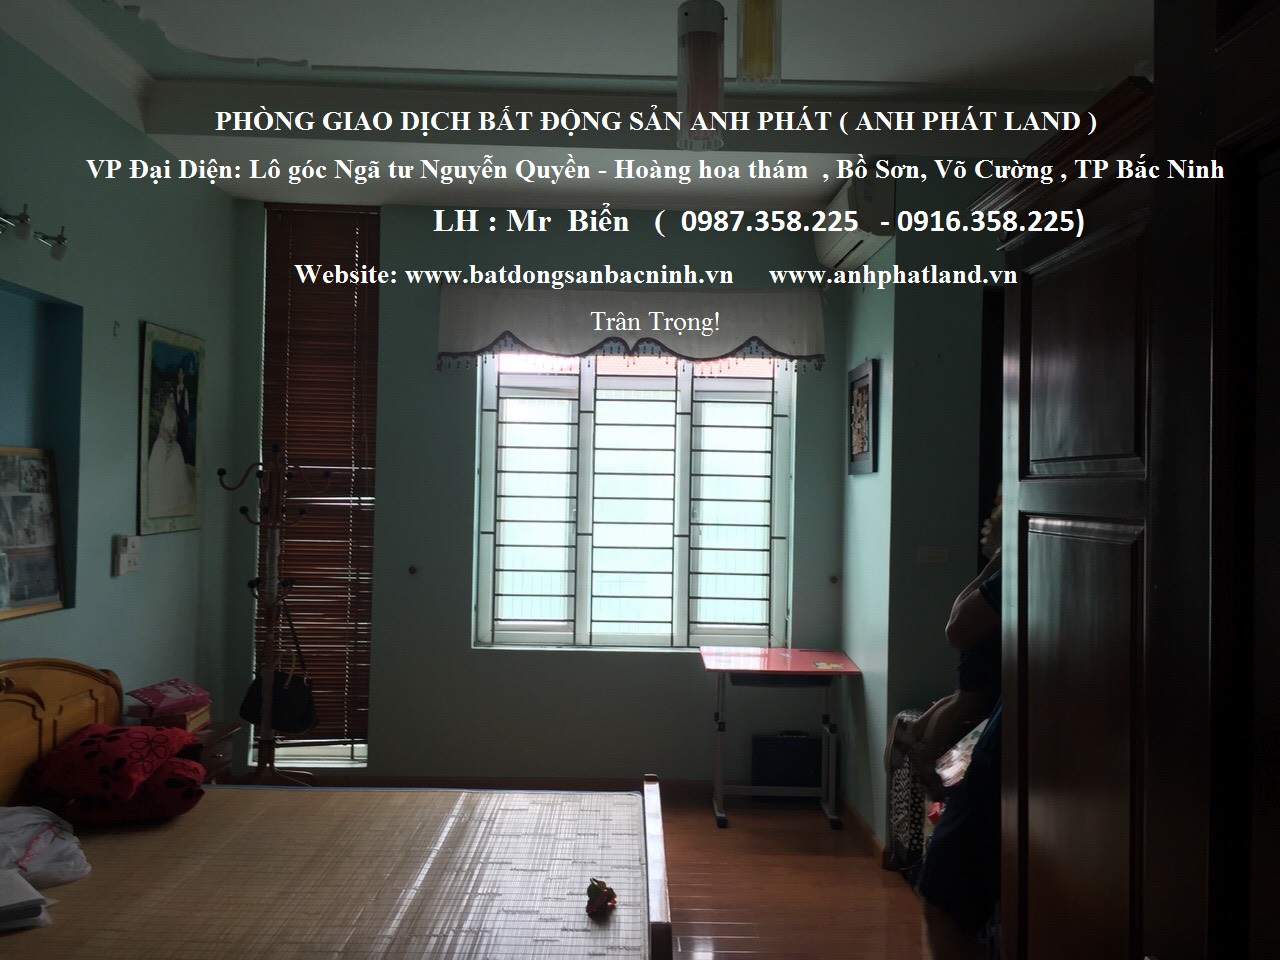 Gia chủ cần cho thuê nhà 3 phòng ngủ - trung tâm thành phố Bắc Ninh 10605954